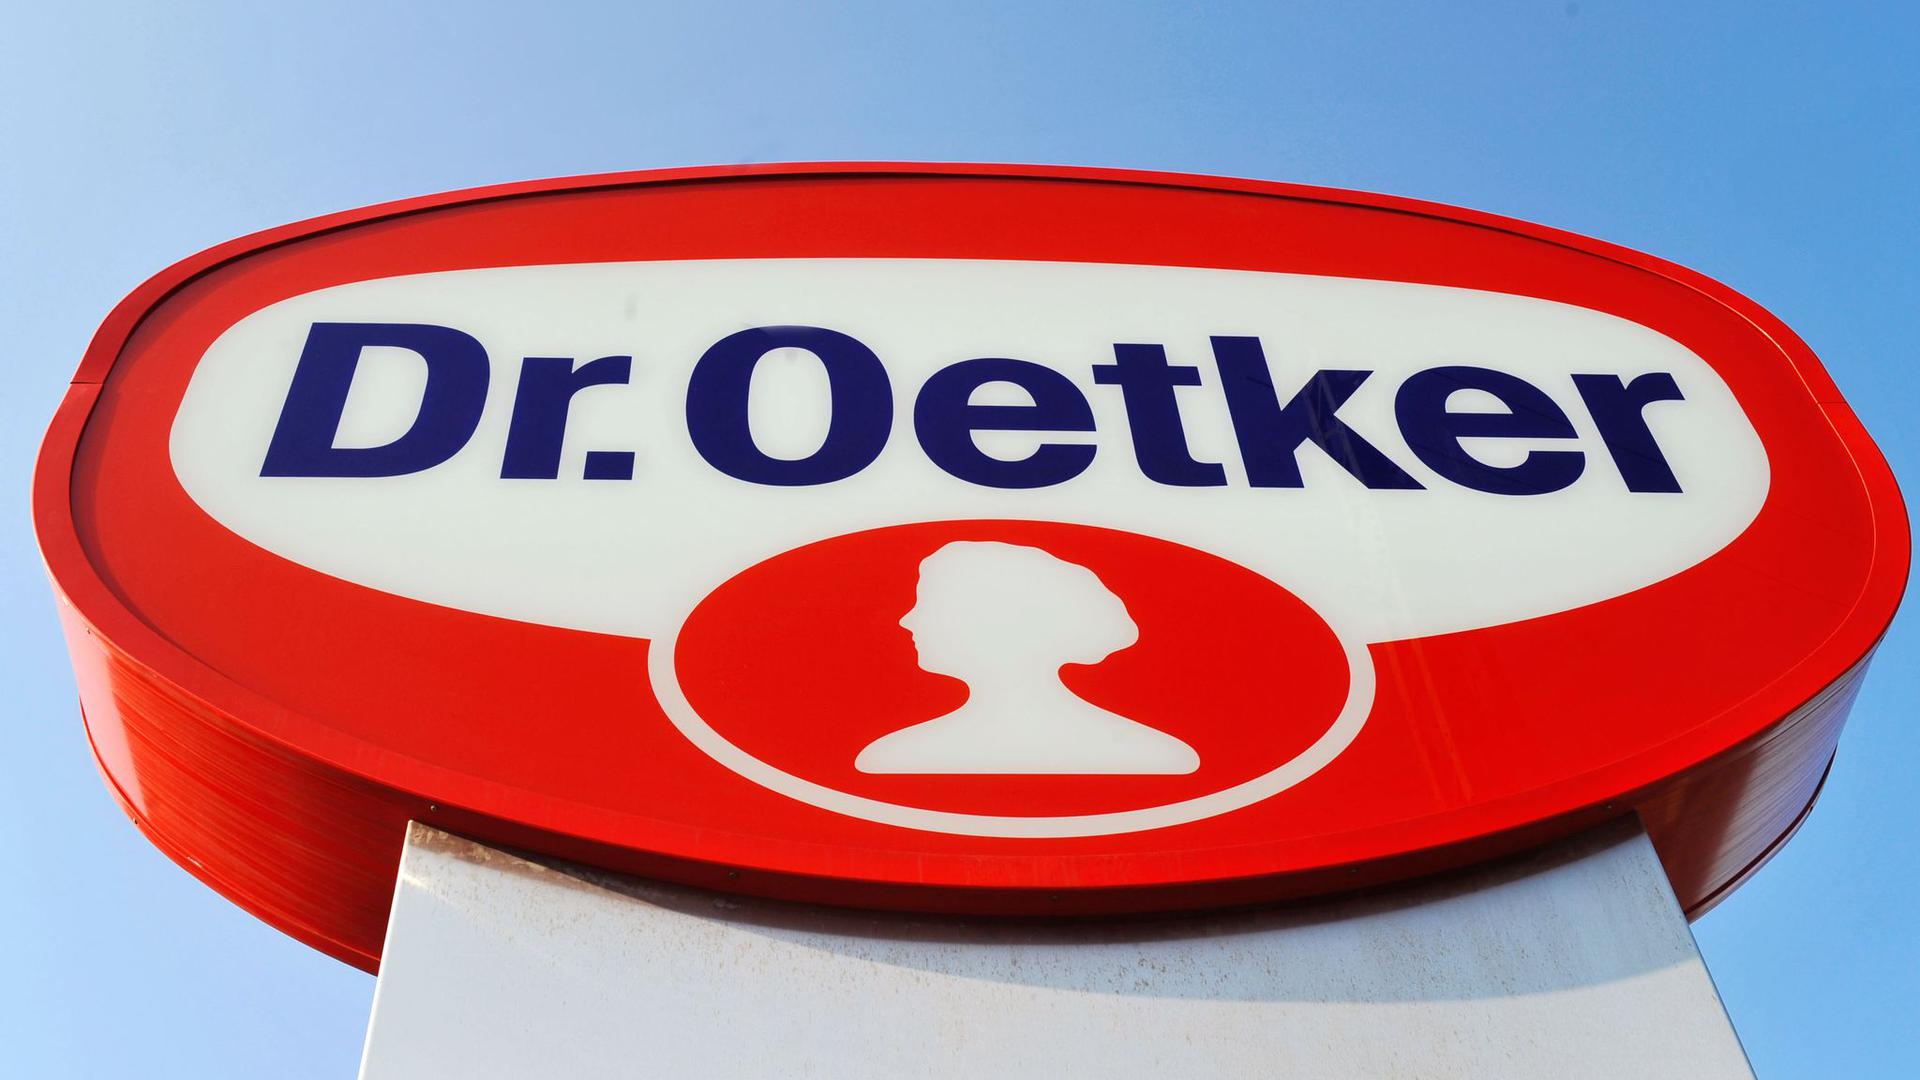 Dr. Oetker's logo.